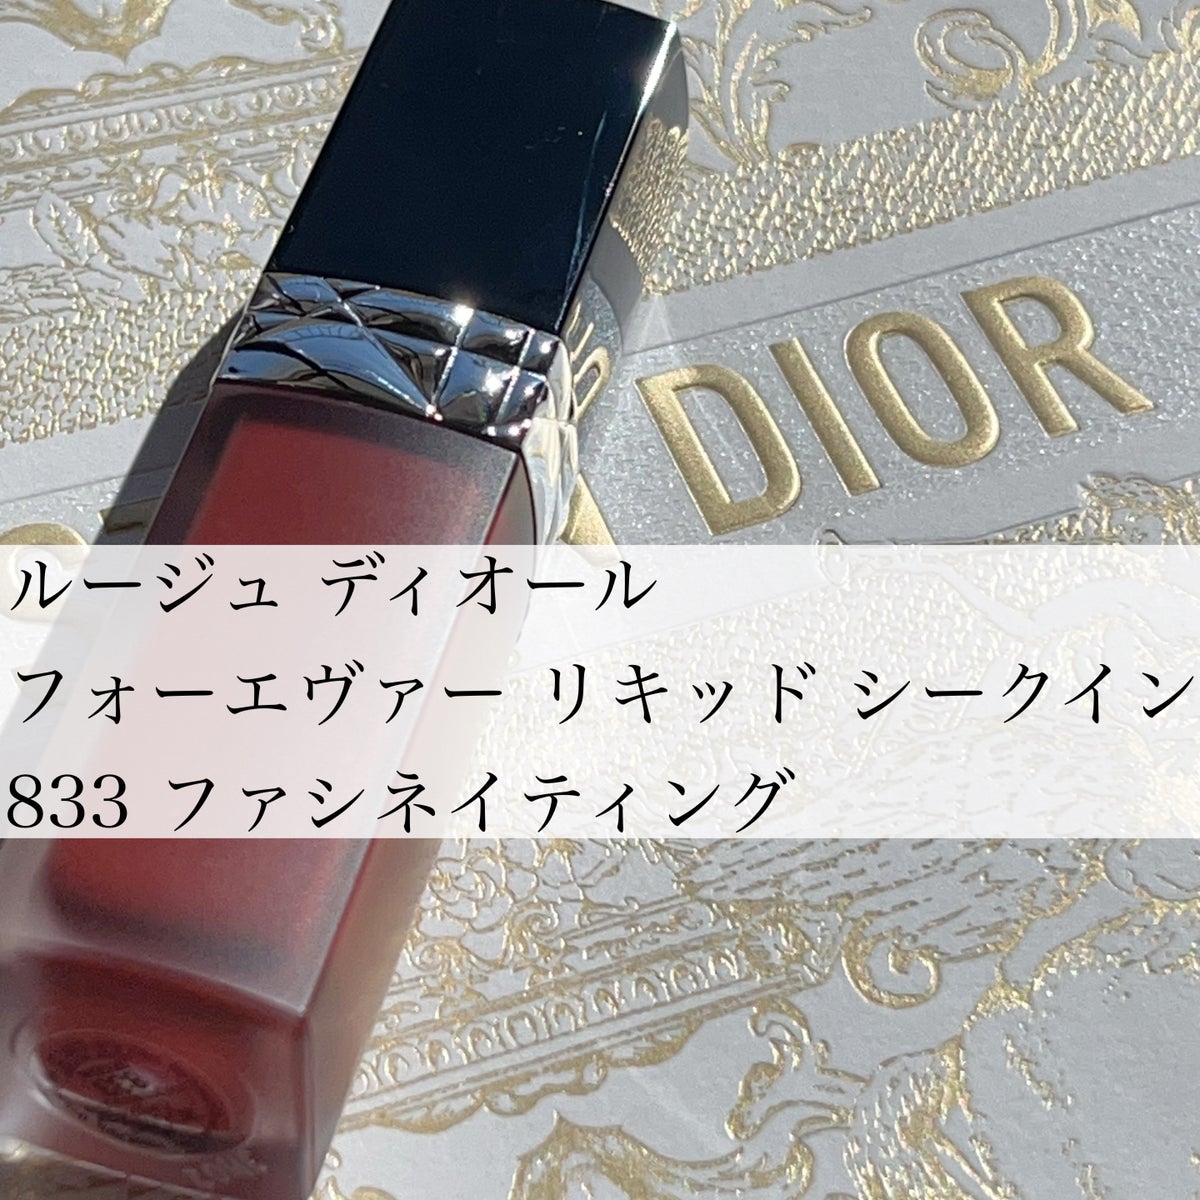 ベースメイク/化粧品Christian Dior ルージュディオール 833 ファシネ